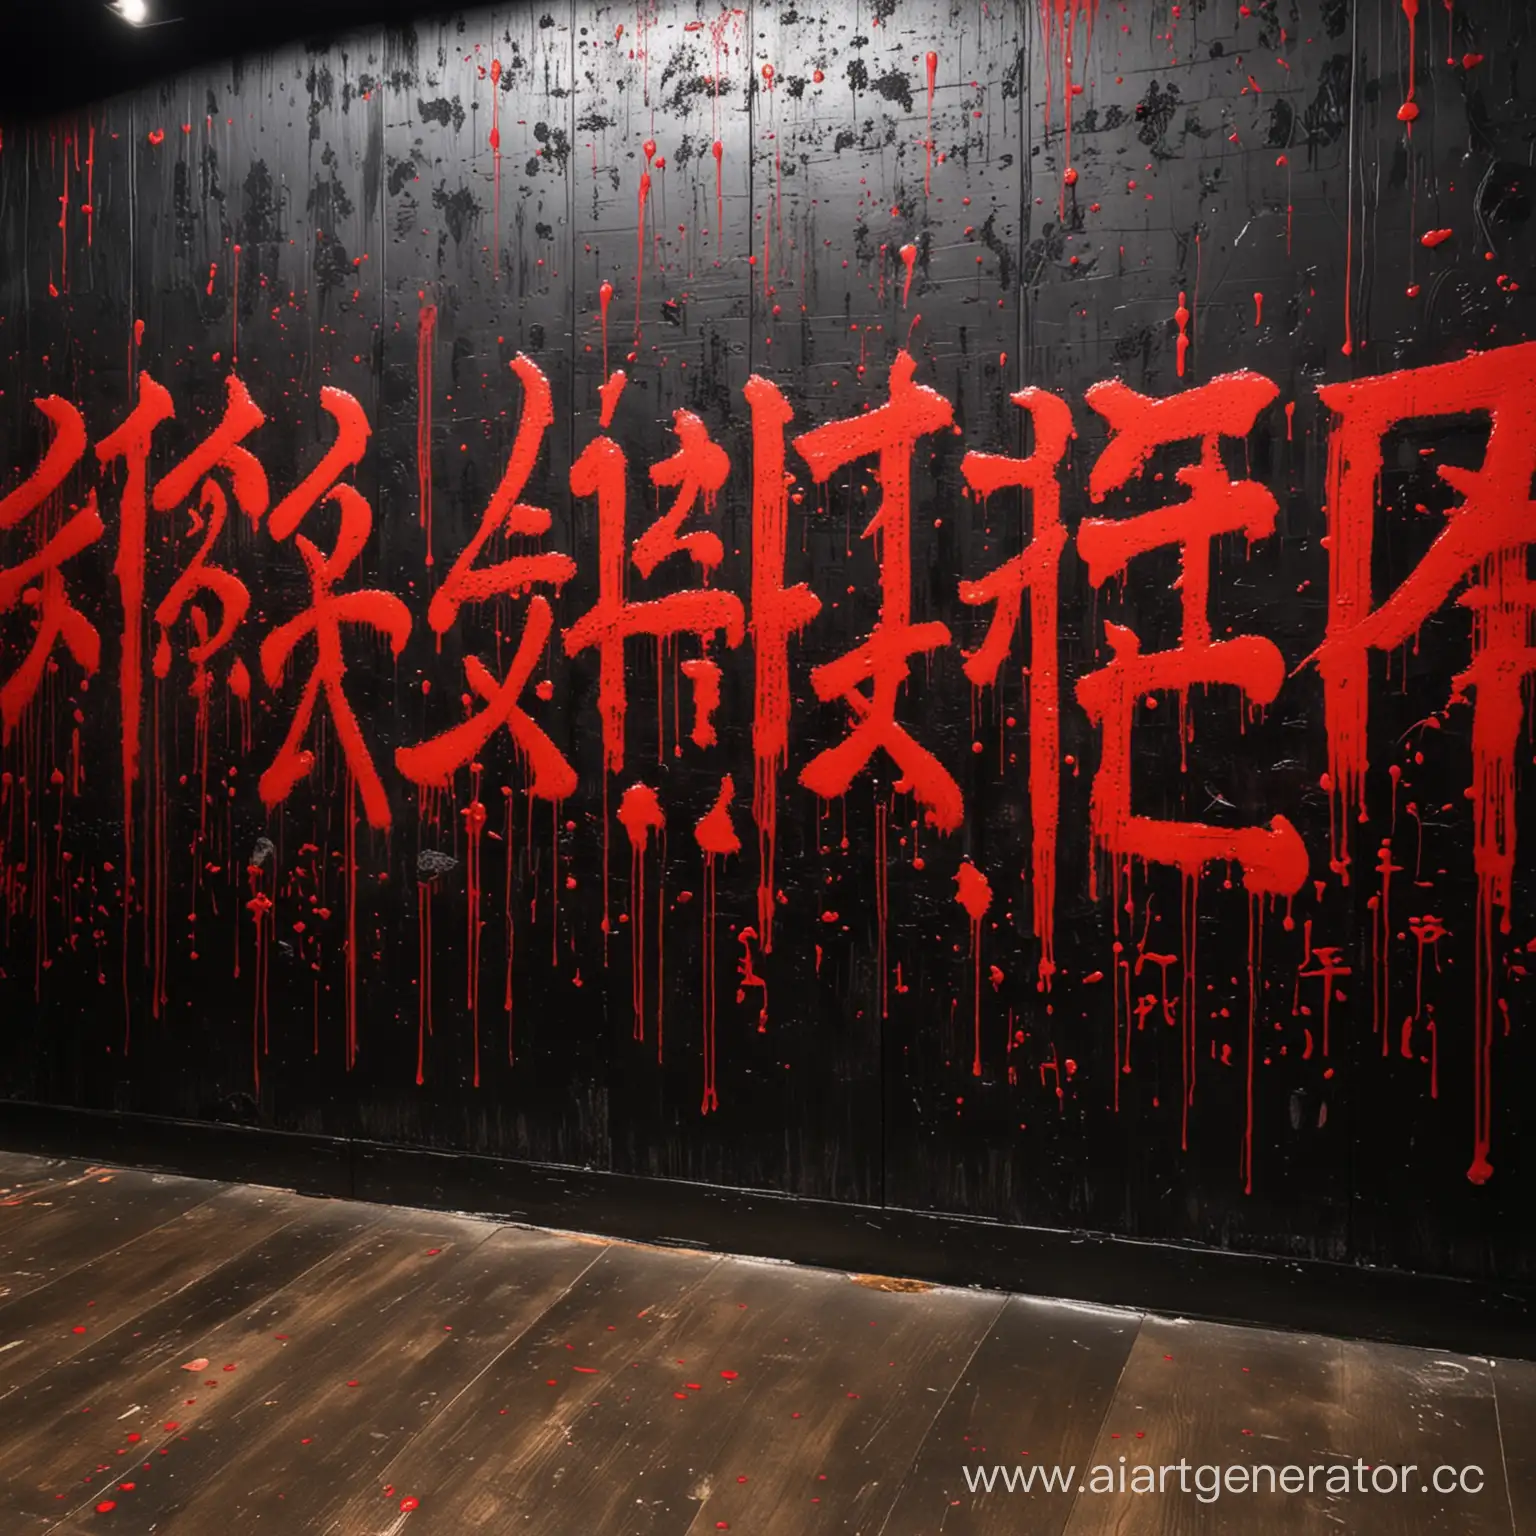 чёрная стена на ней много крови . На всю стены красные японские слова жирным шрифтом